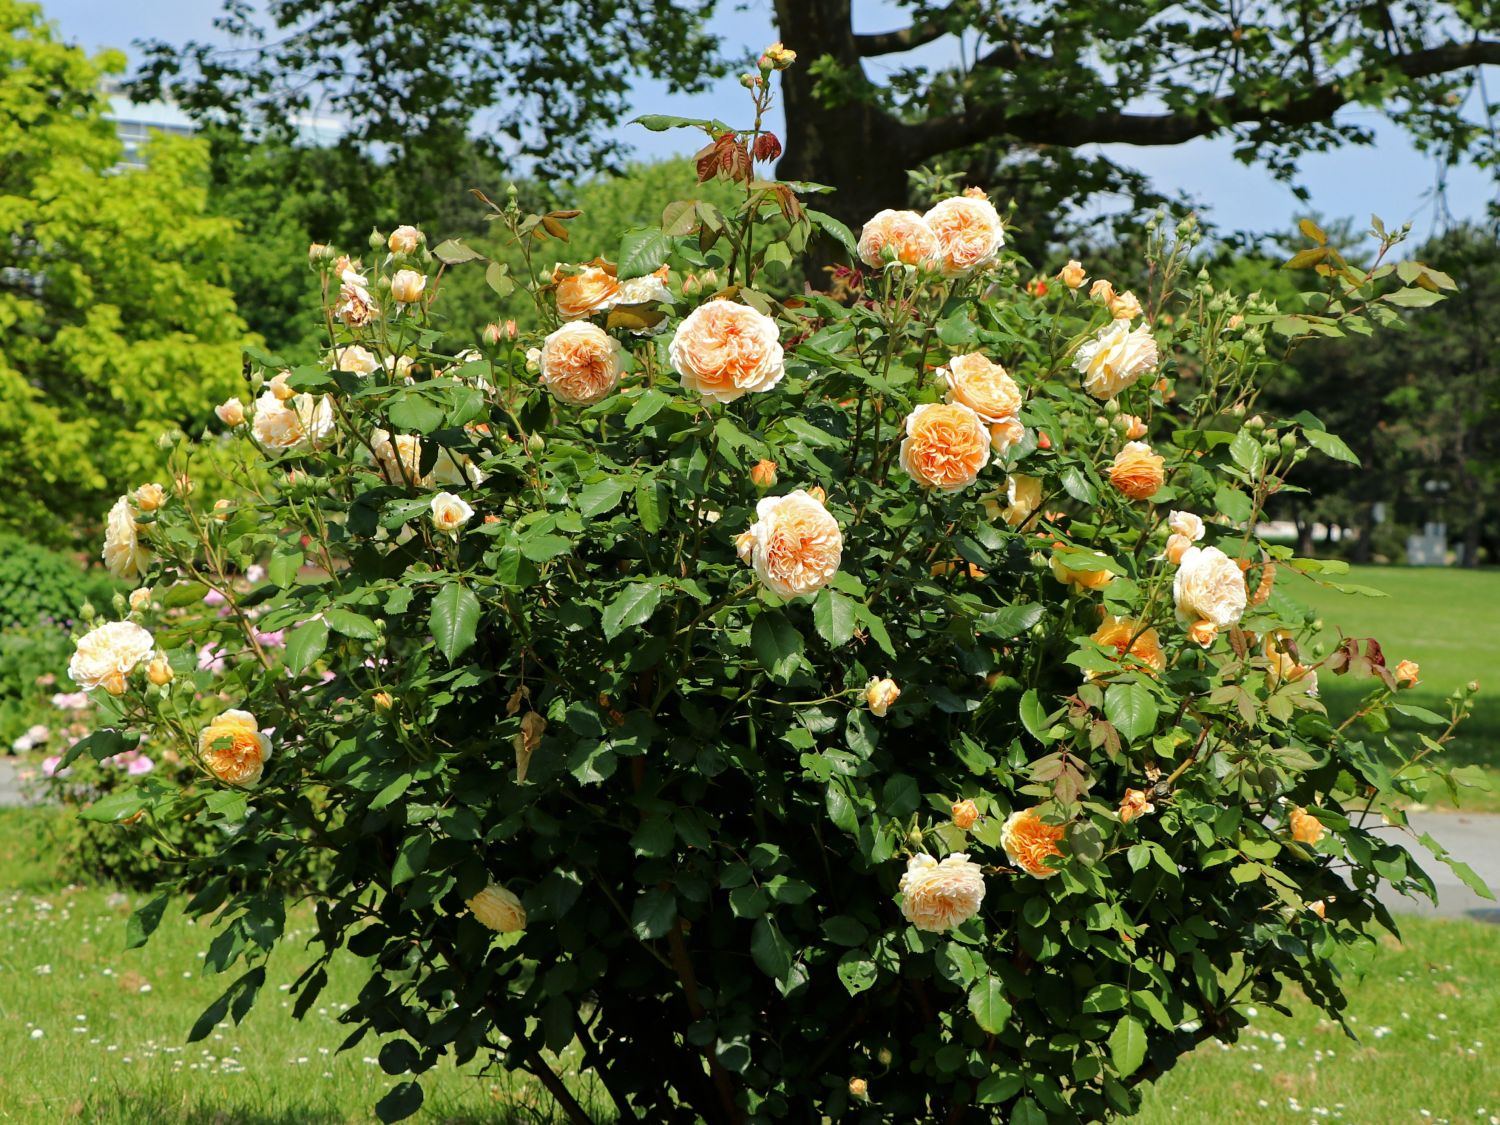 frisch aus der Gärtnerei Gartenrose Pflanzen Kölle Englische Rose „Crown Princess Margareta“ von David Austin apricotfarben blühende fruchtig duftende Topfrose im 6 L Topf 